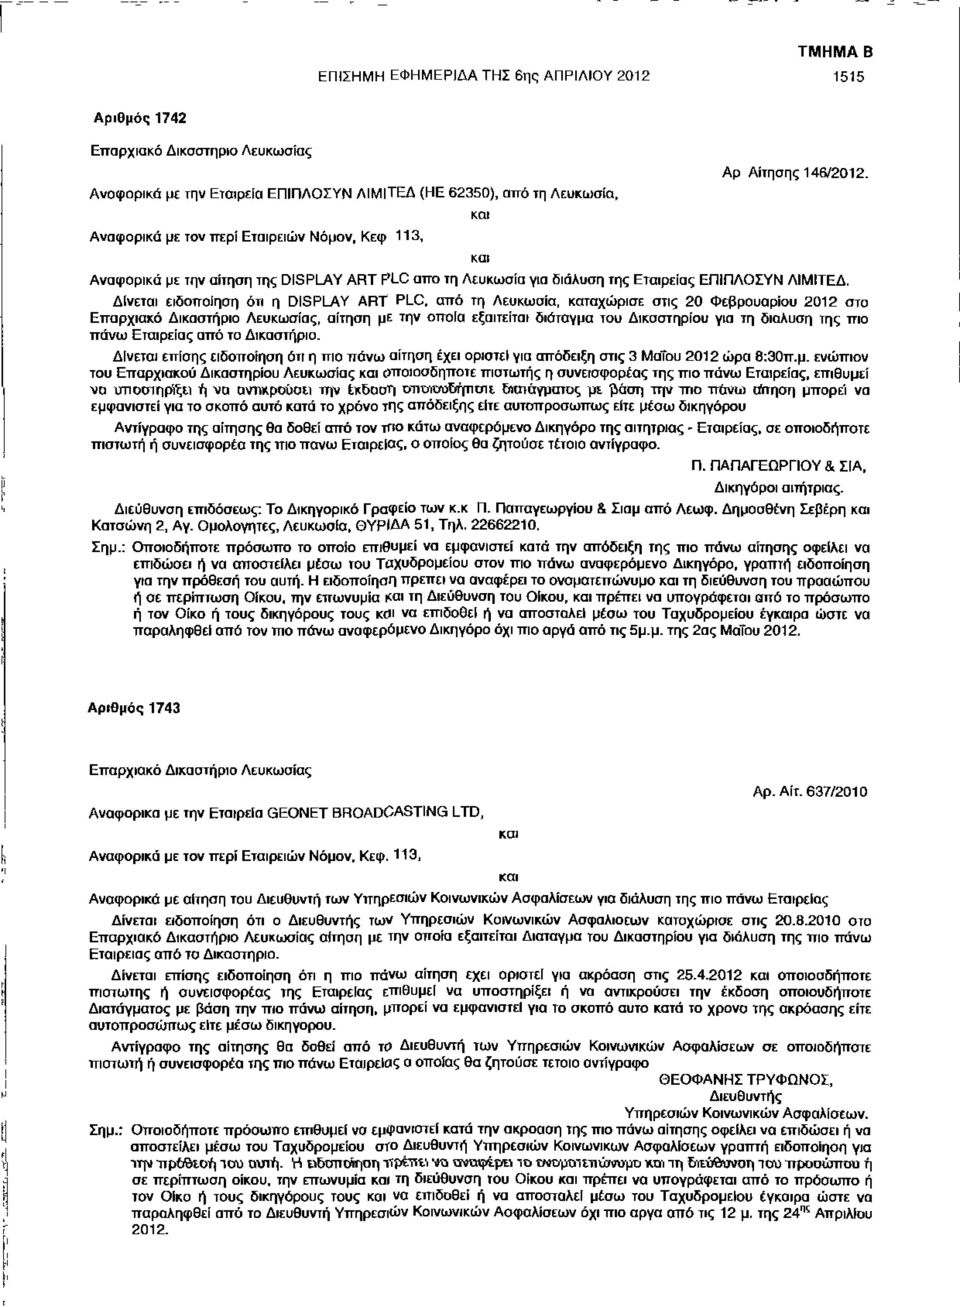 Δίνεται ειδοποίηση ότι η DISPLAY ART PLC, από τη Λευκωσία, καταχώρισε στις 20 Φεβρουαρίου 2012 στο Επαρχιακό Δικαστήριο Λευκωσίας, αίτηση με την οποία εξαιτείται διάταγμα του Δικαστηρίου για τη